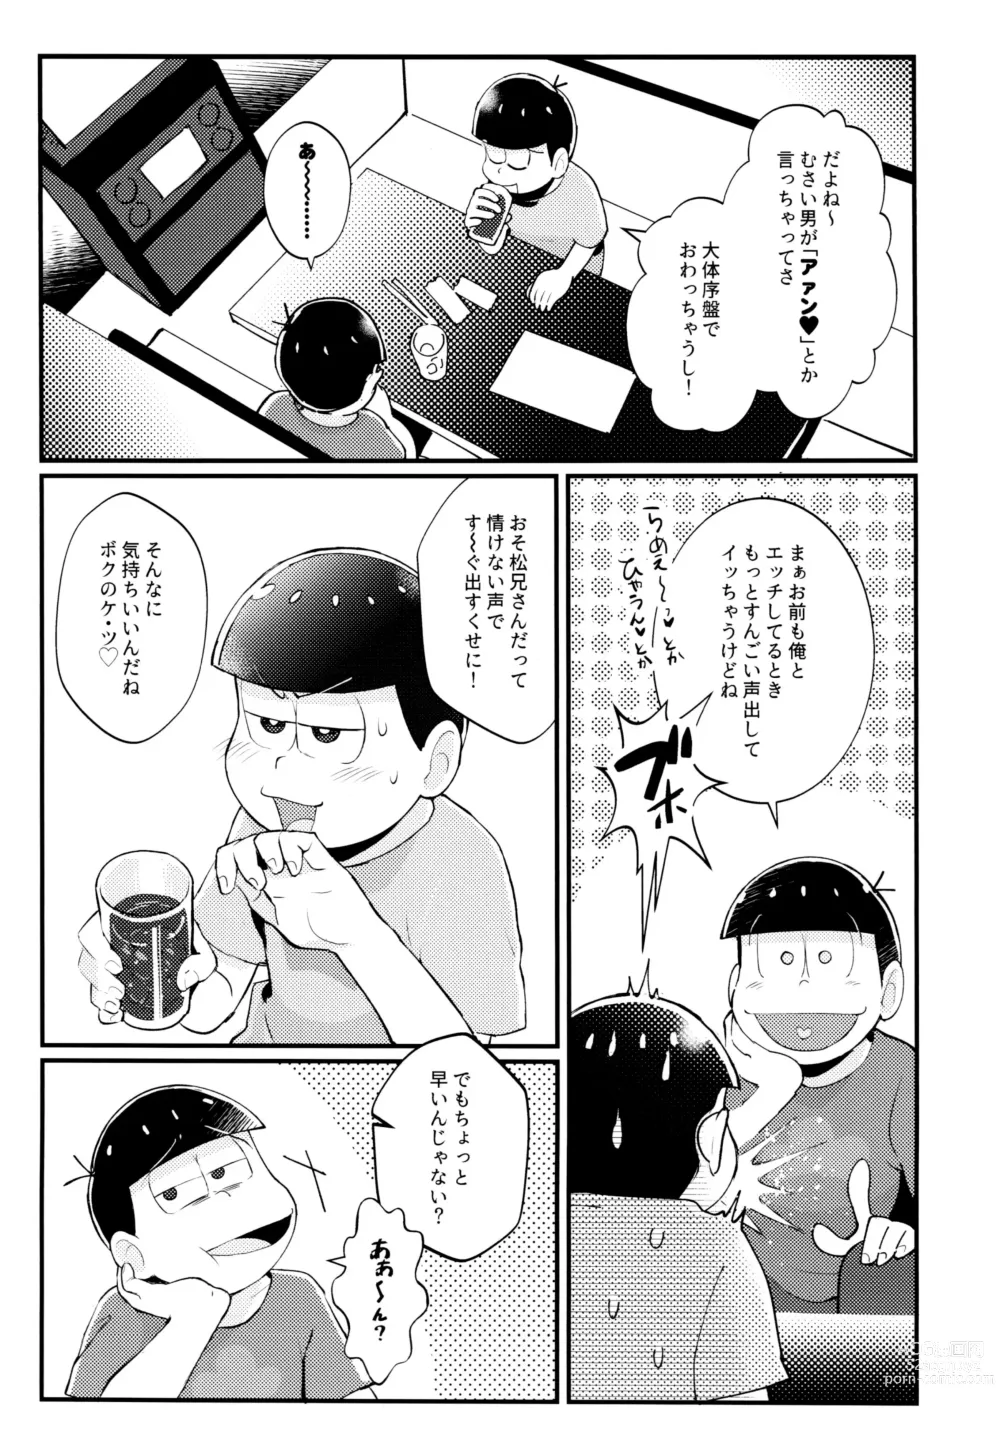 Page 6 of doujinshi Manatsu no!! Shikoshiko Karaoke Dai Battle!!